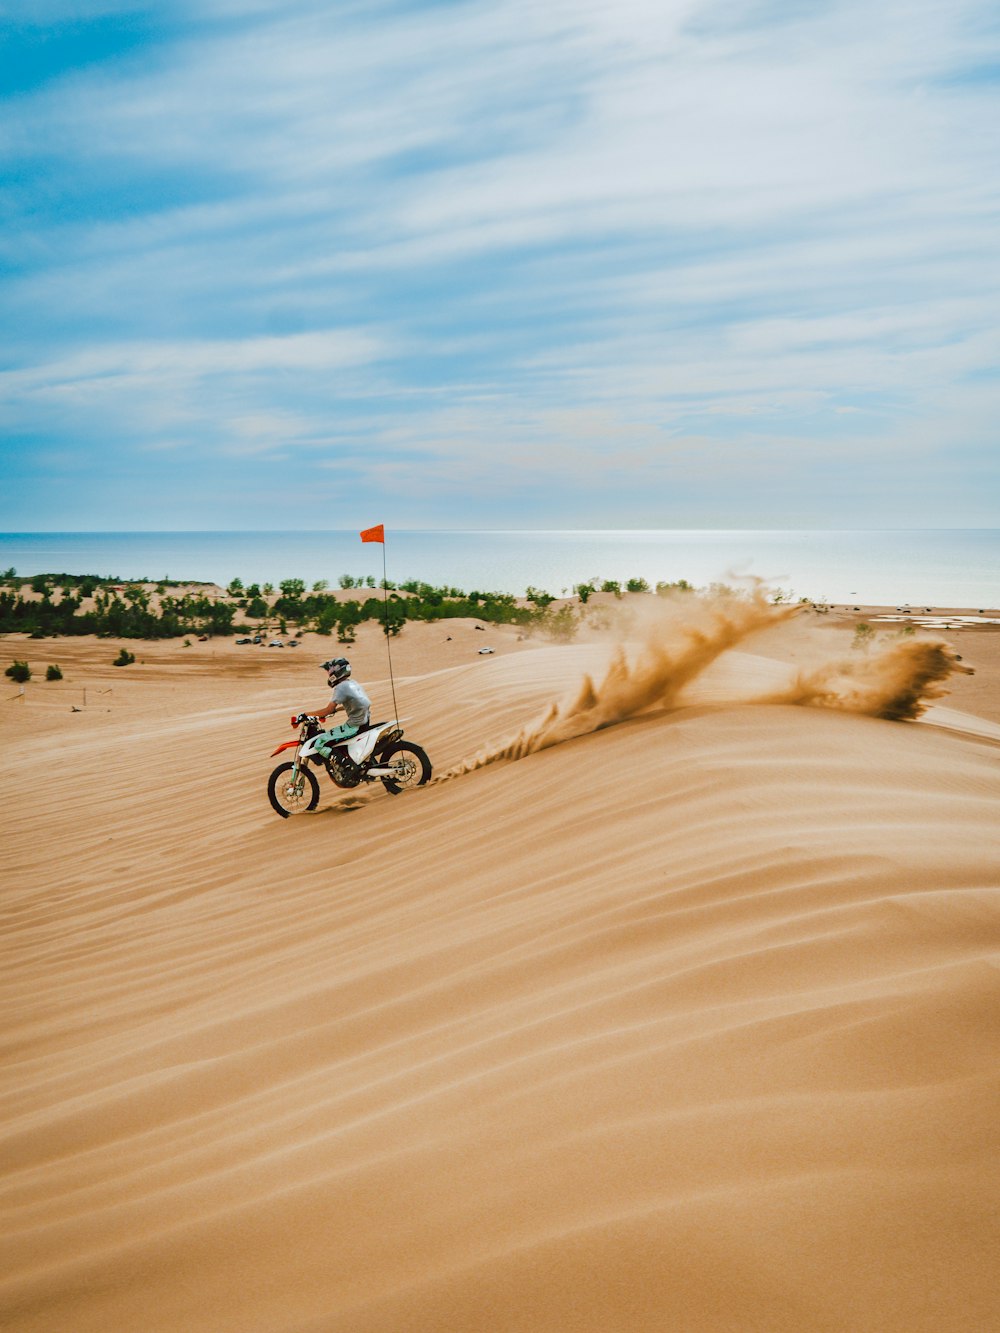 uomo che guida la moto sulla sabbia marrone durante il giorno